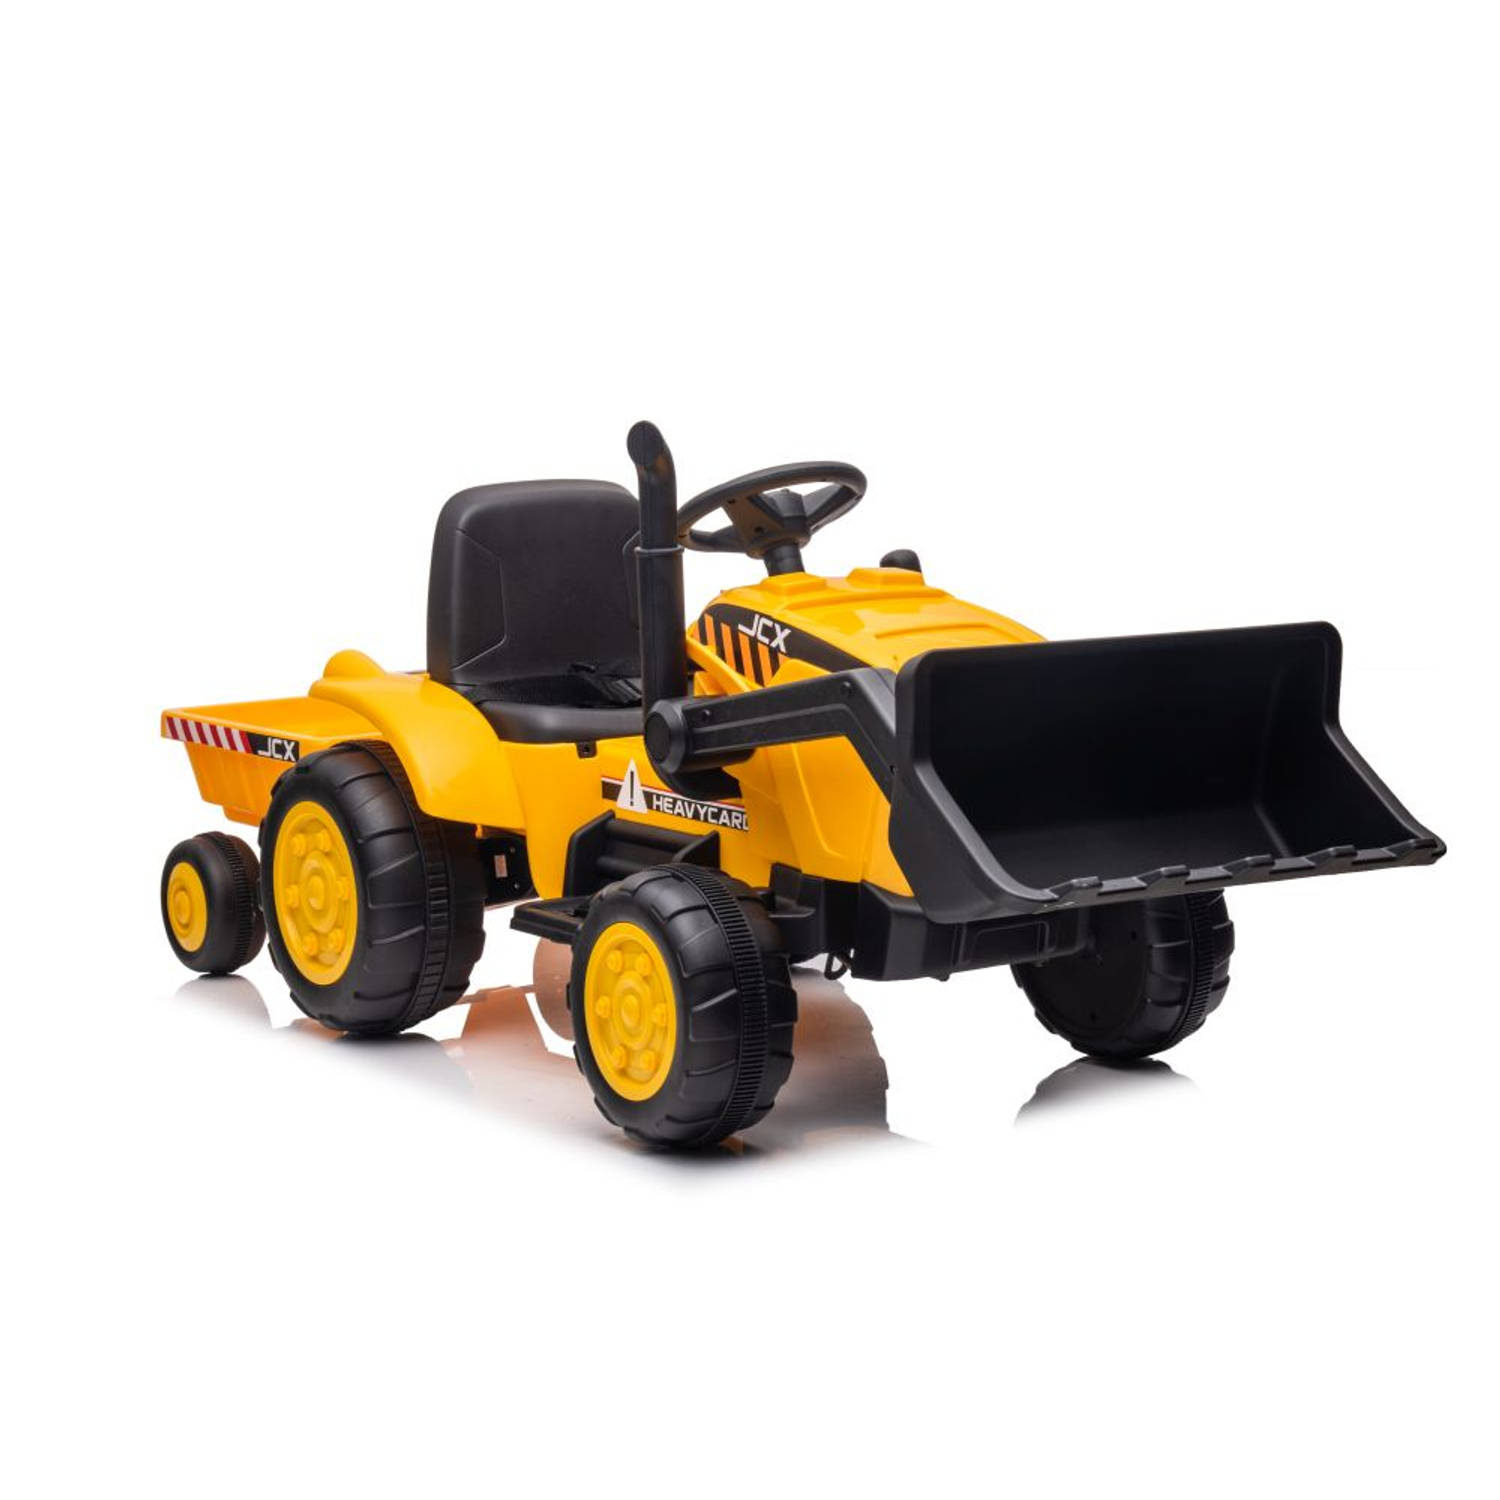 Elektrische kinder tractor met voorlader en trailer - accu tractor voor kinderen tot 30kg max 2,5 - 3,5km/h geel - inclusief aanhanger - bulldozer - 12V